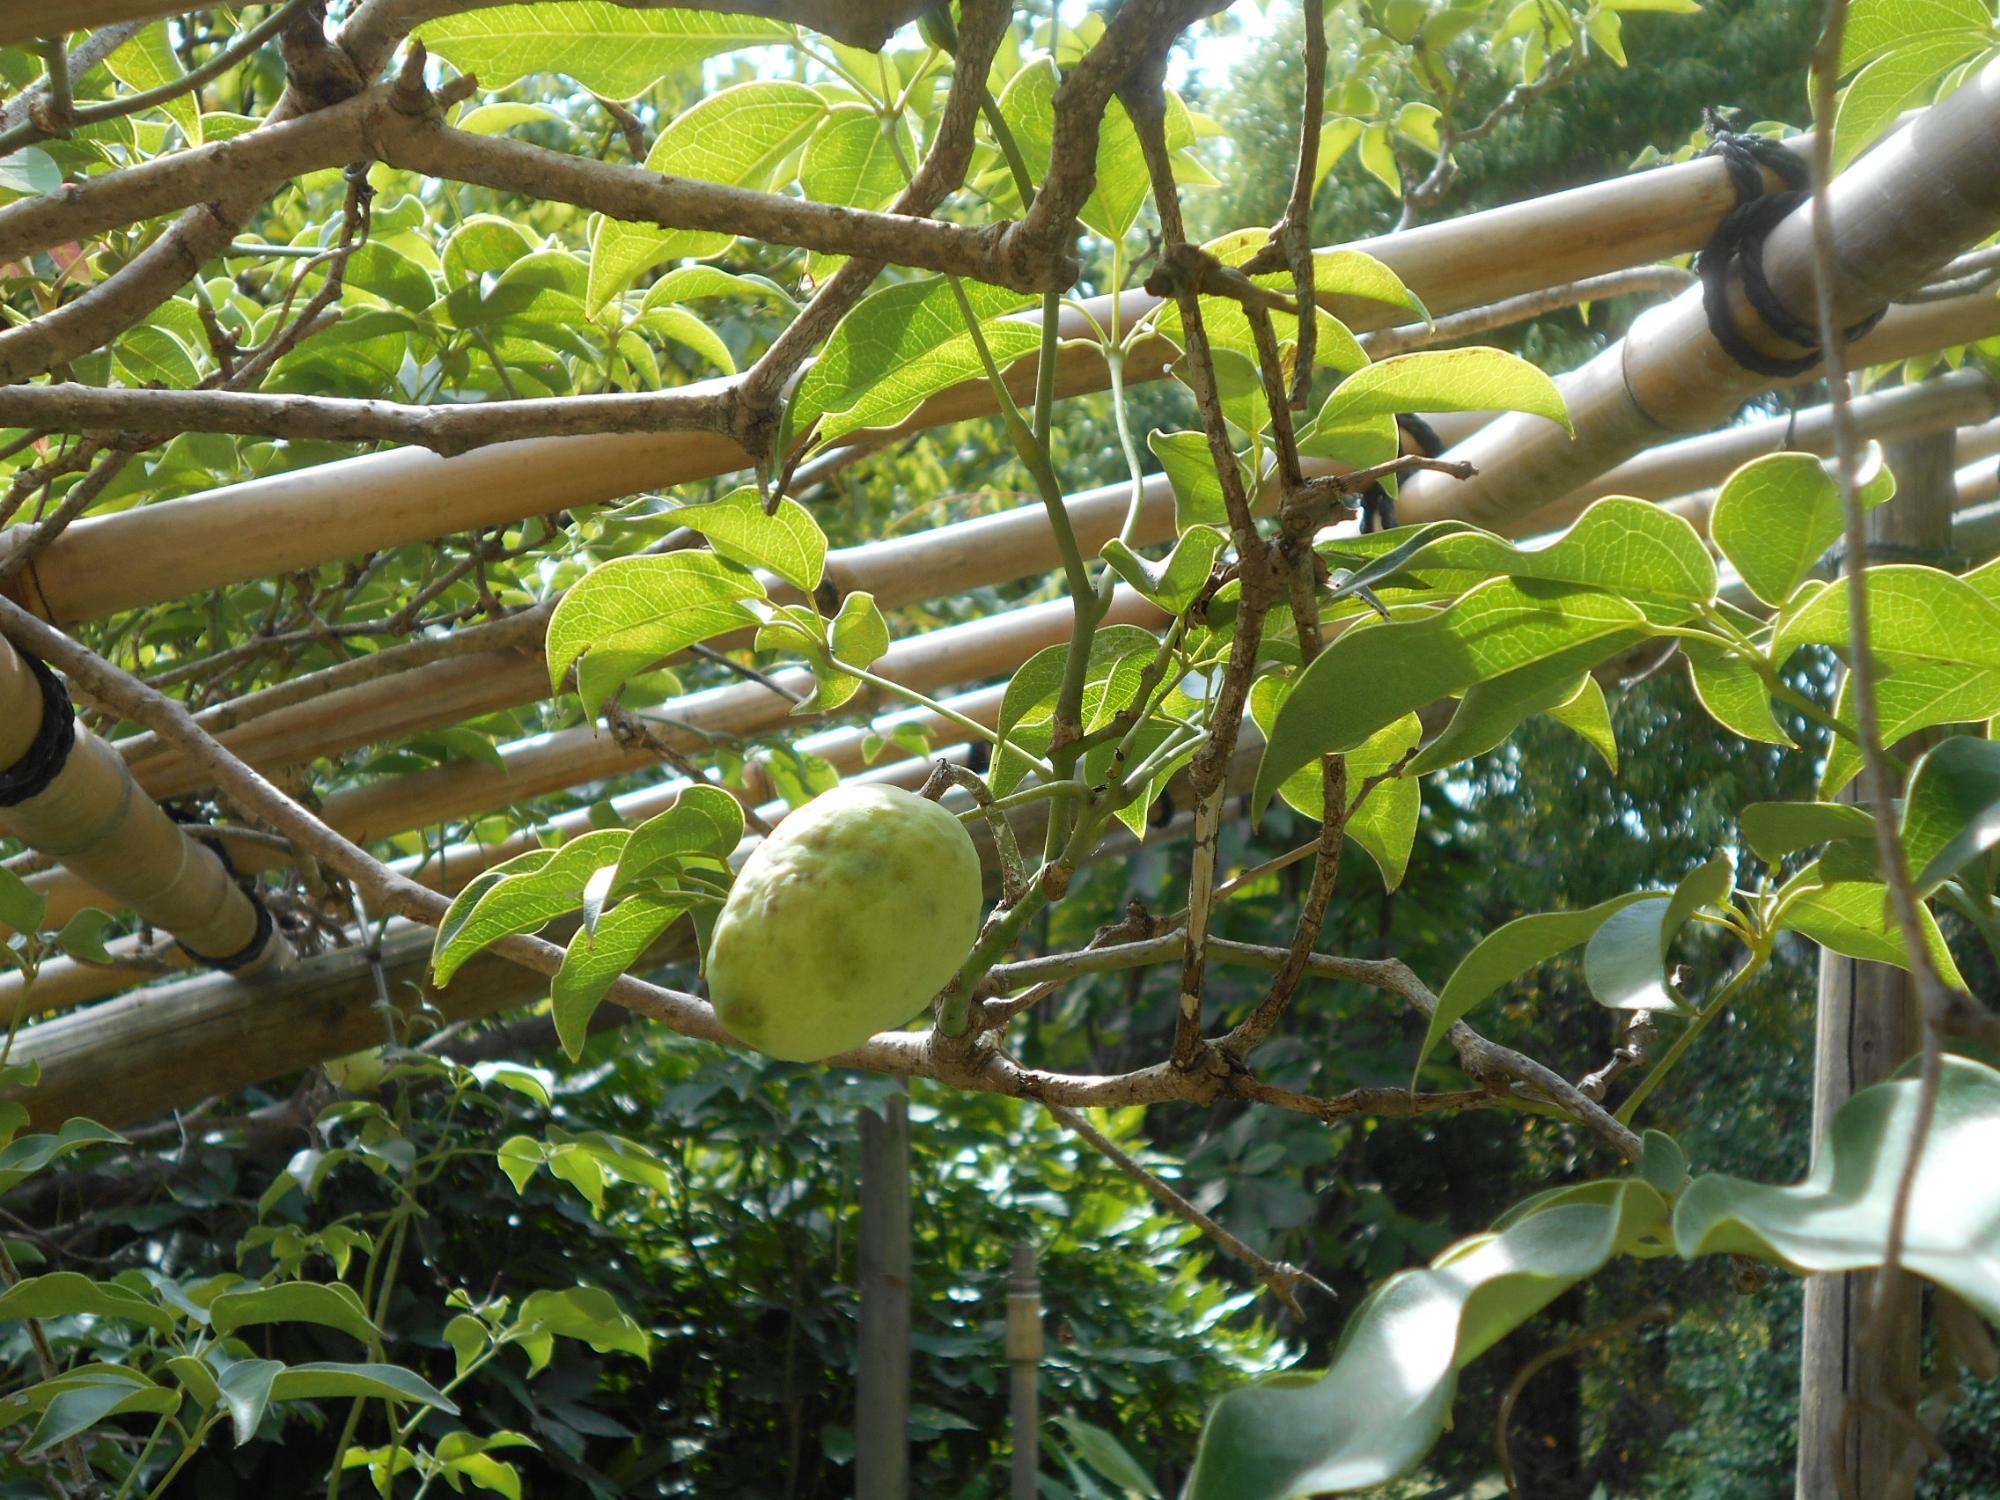 アケビ科のつる植物のムベの木です。果実は、熟しても割れない特徴があります。(薬草園・東屋横)